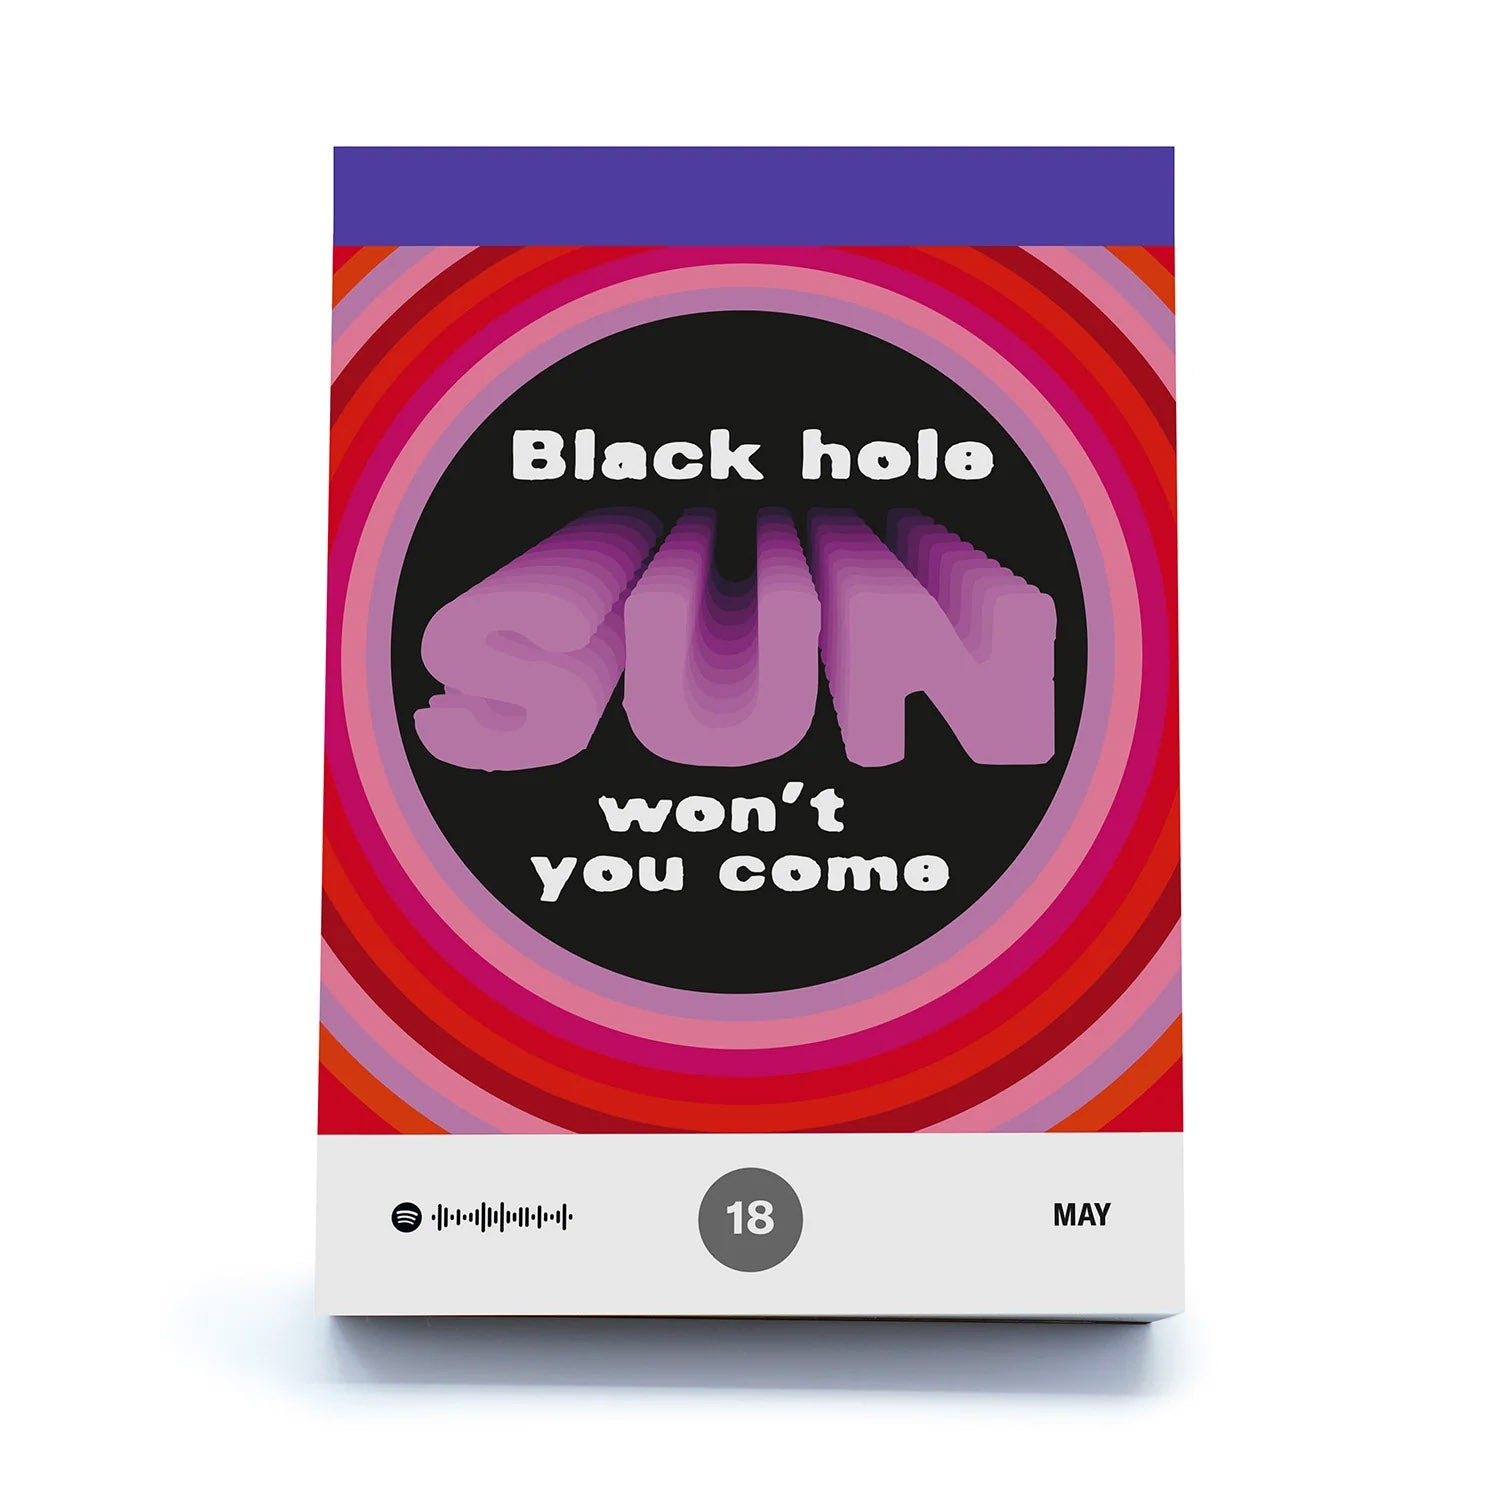 Scheurkalender Songspiration│Songteksten│art. 978-3-949070-17-4│Black hole Sun won't you come